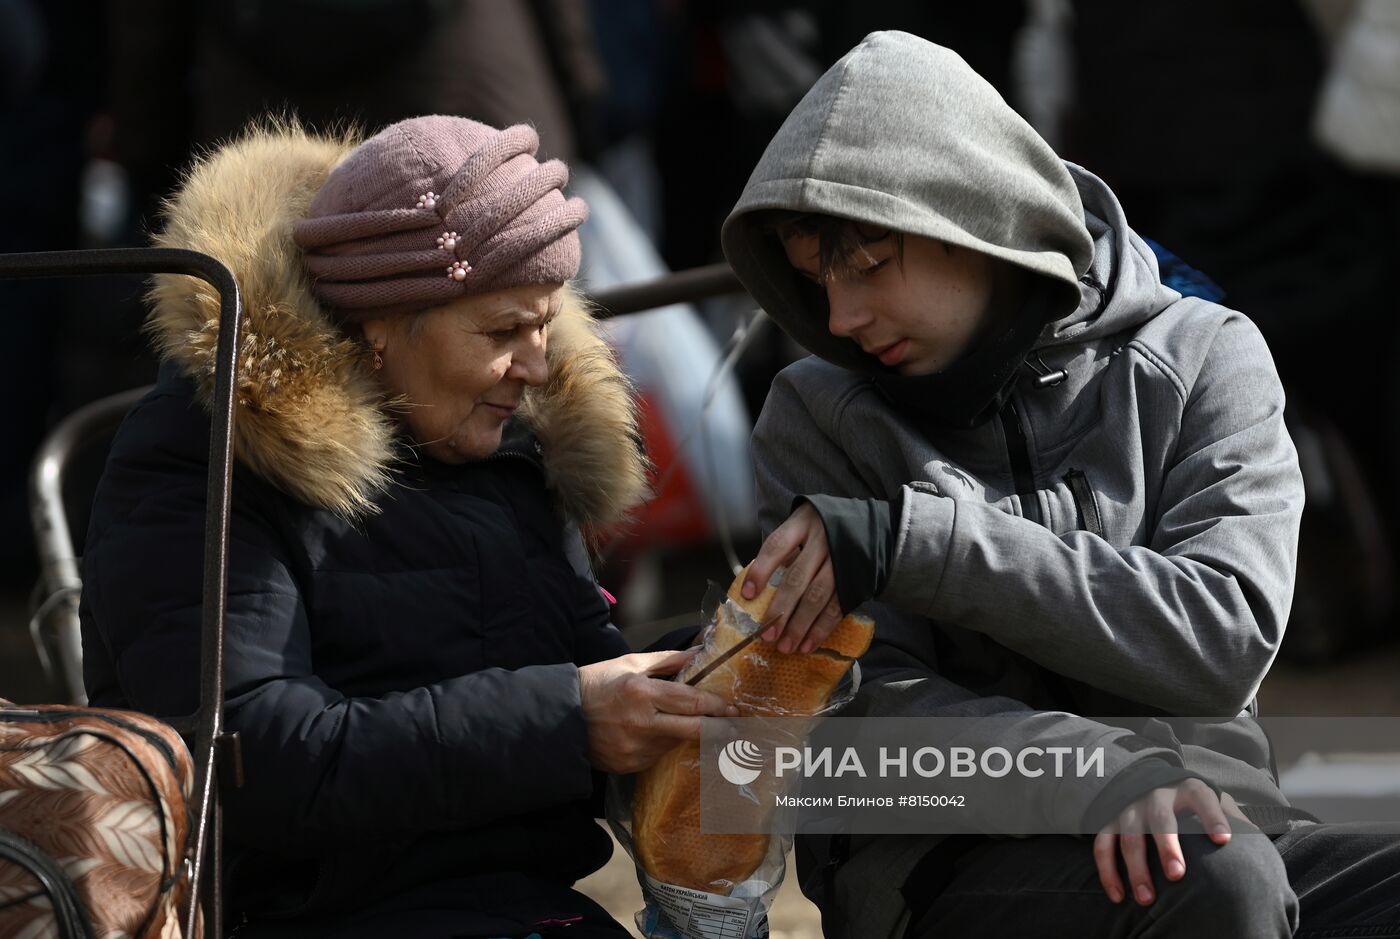 Партия "Единая Россия" открыла в Мариуполе центр гуманитарной помощи